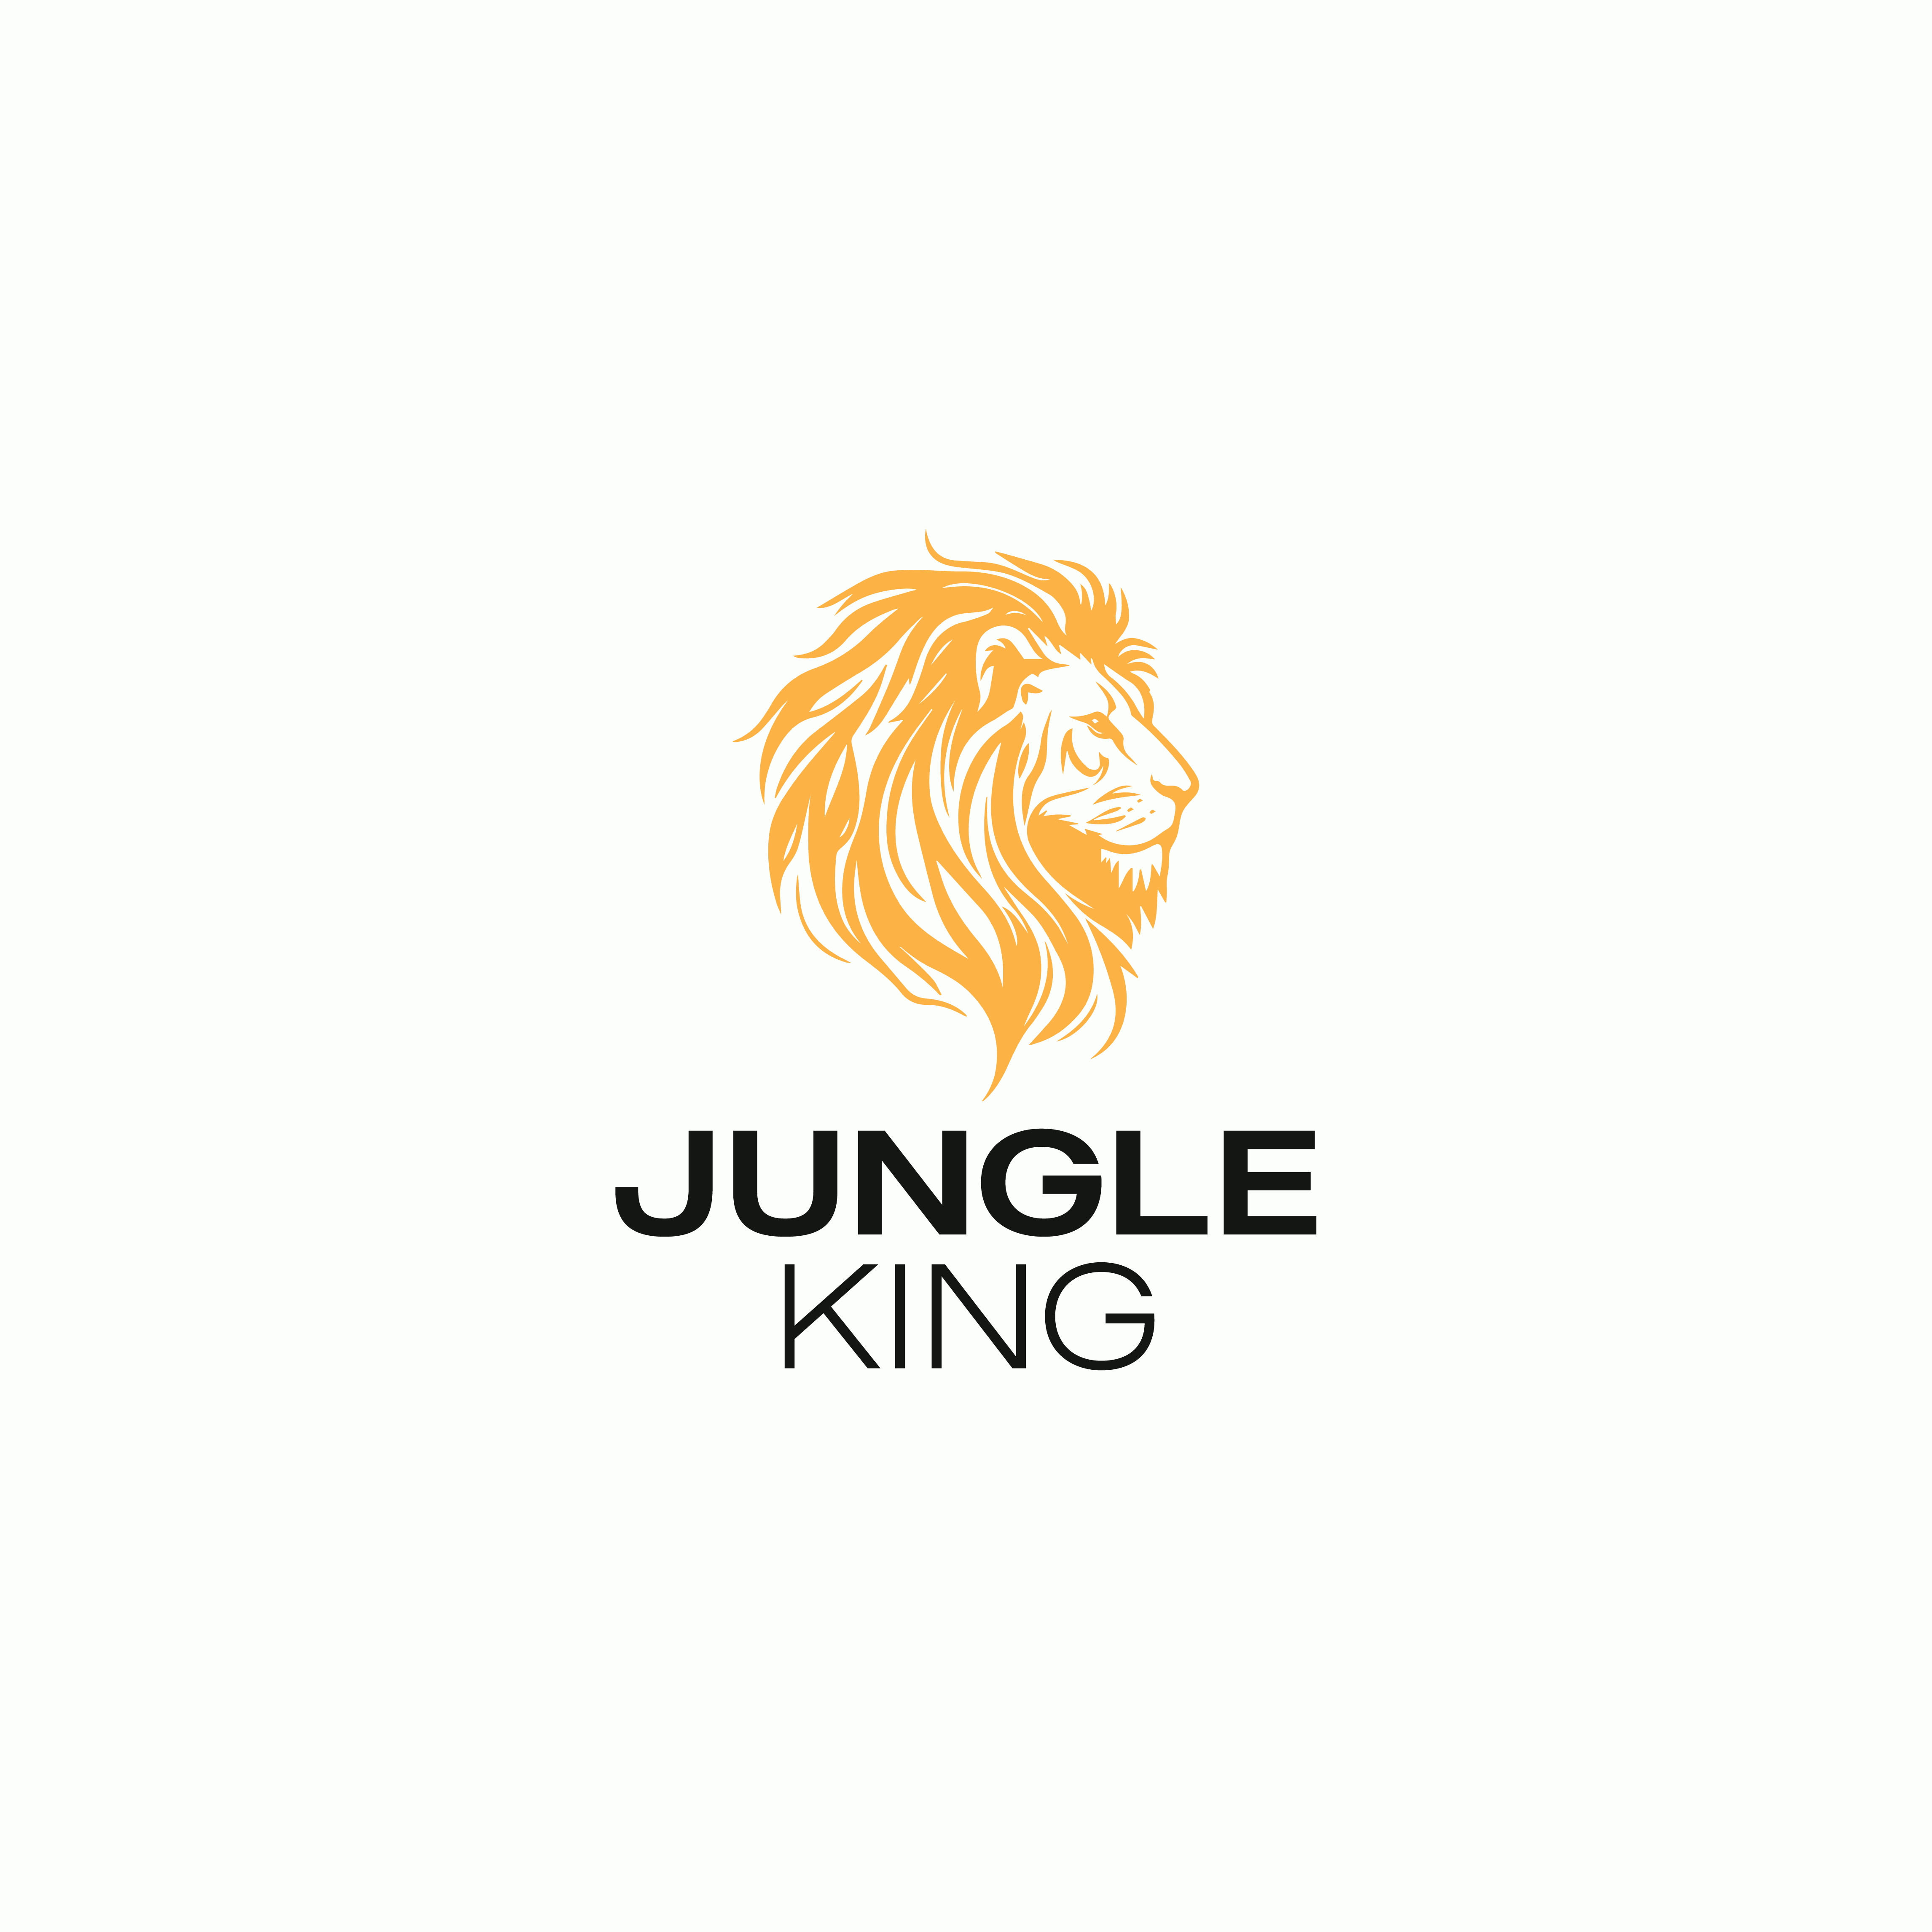 King Logo png images | PNGEgg